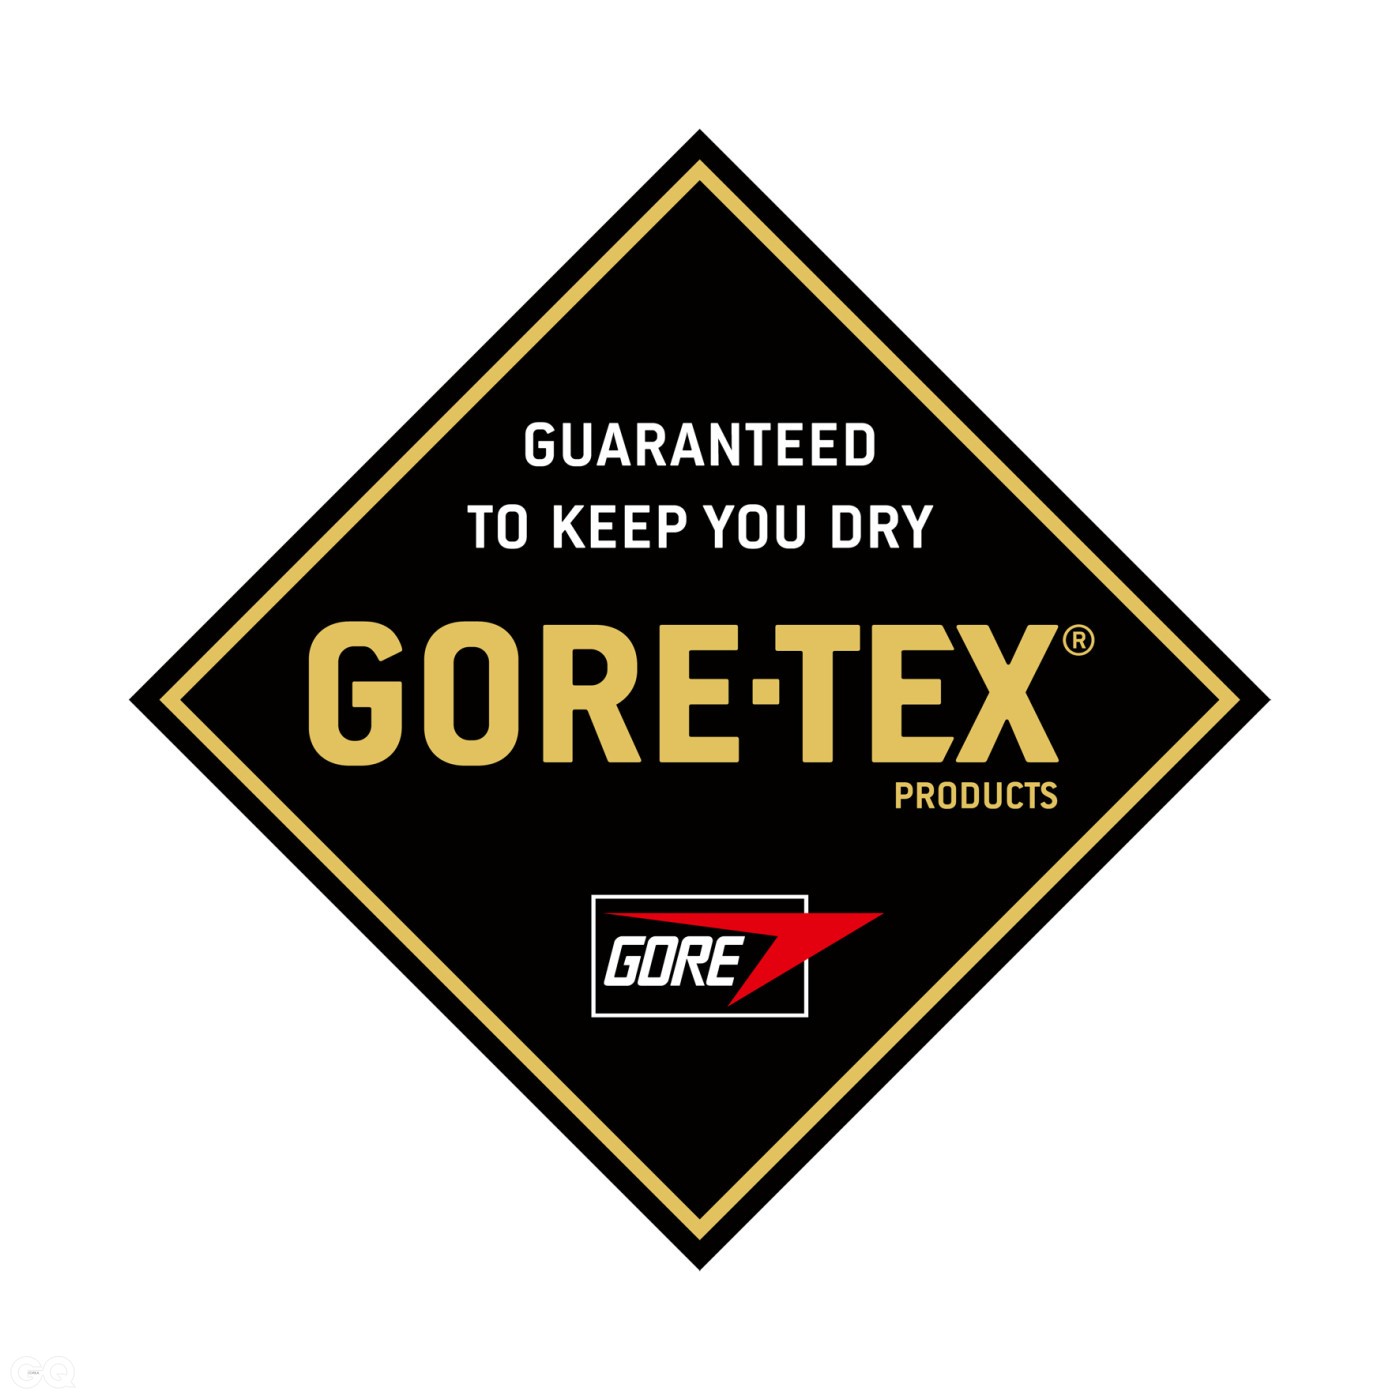 GORE-TEX£ logo